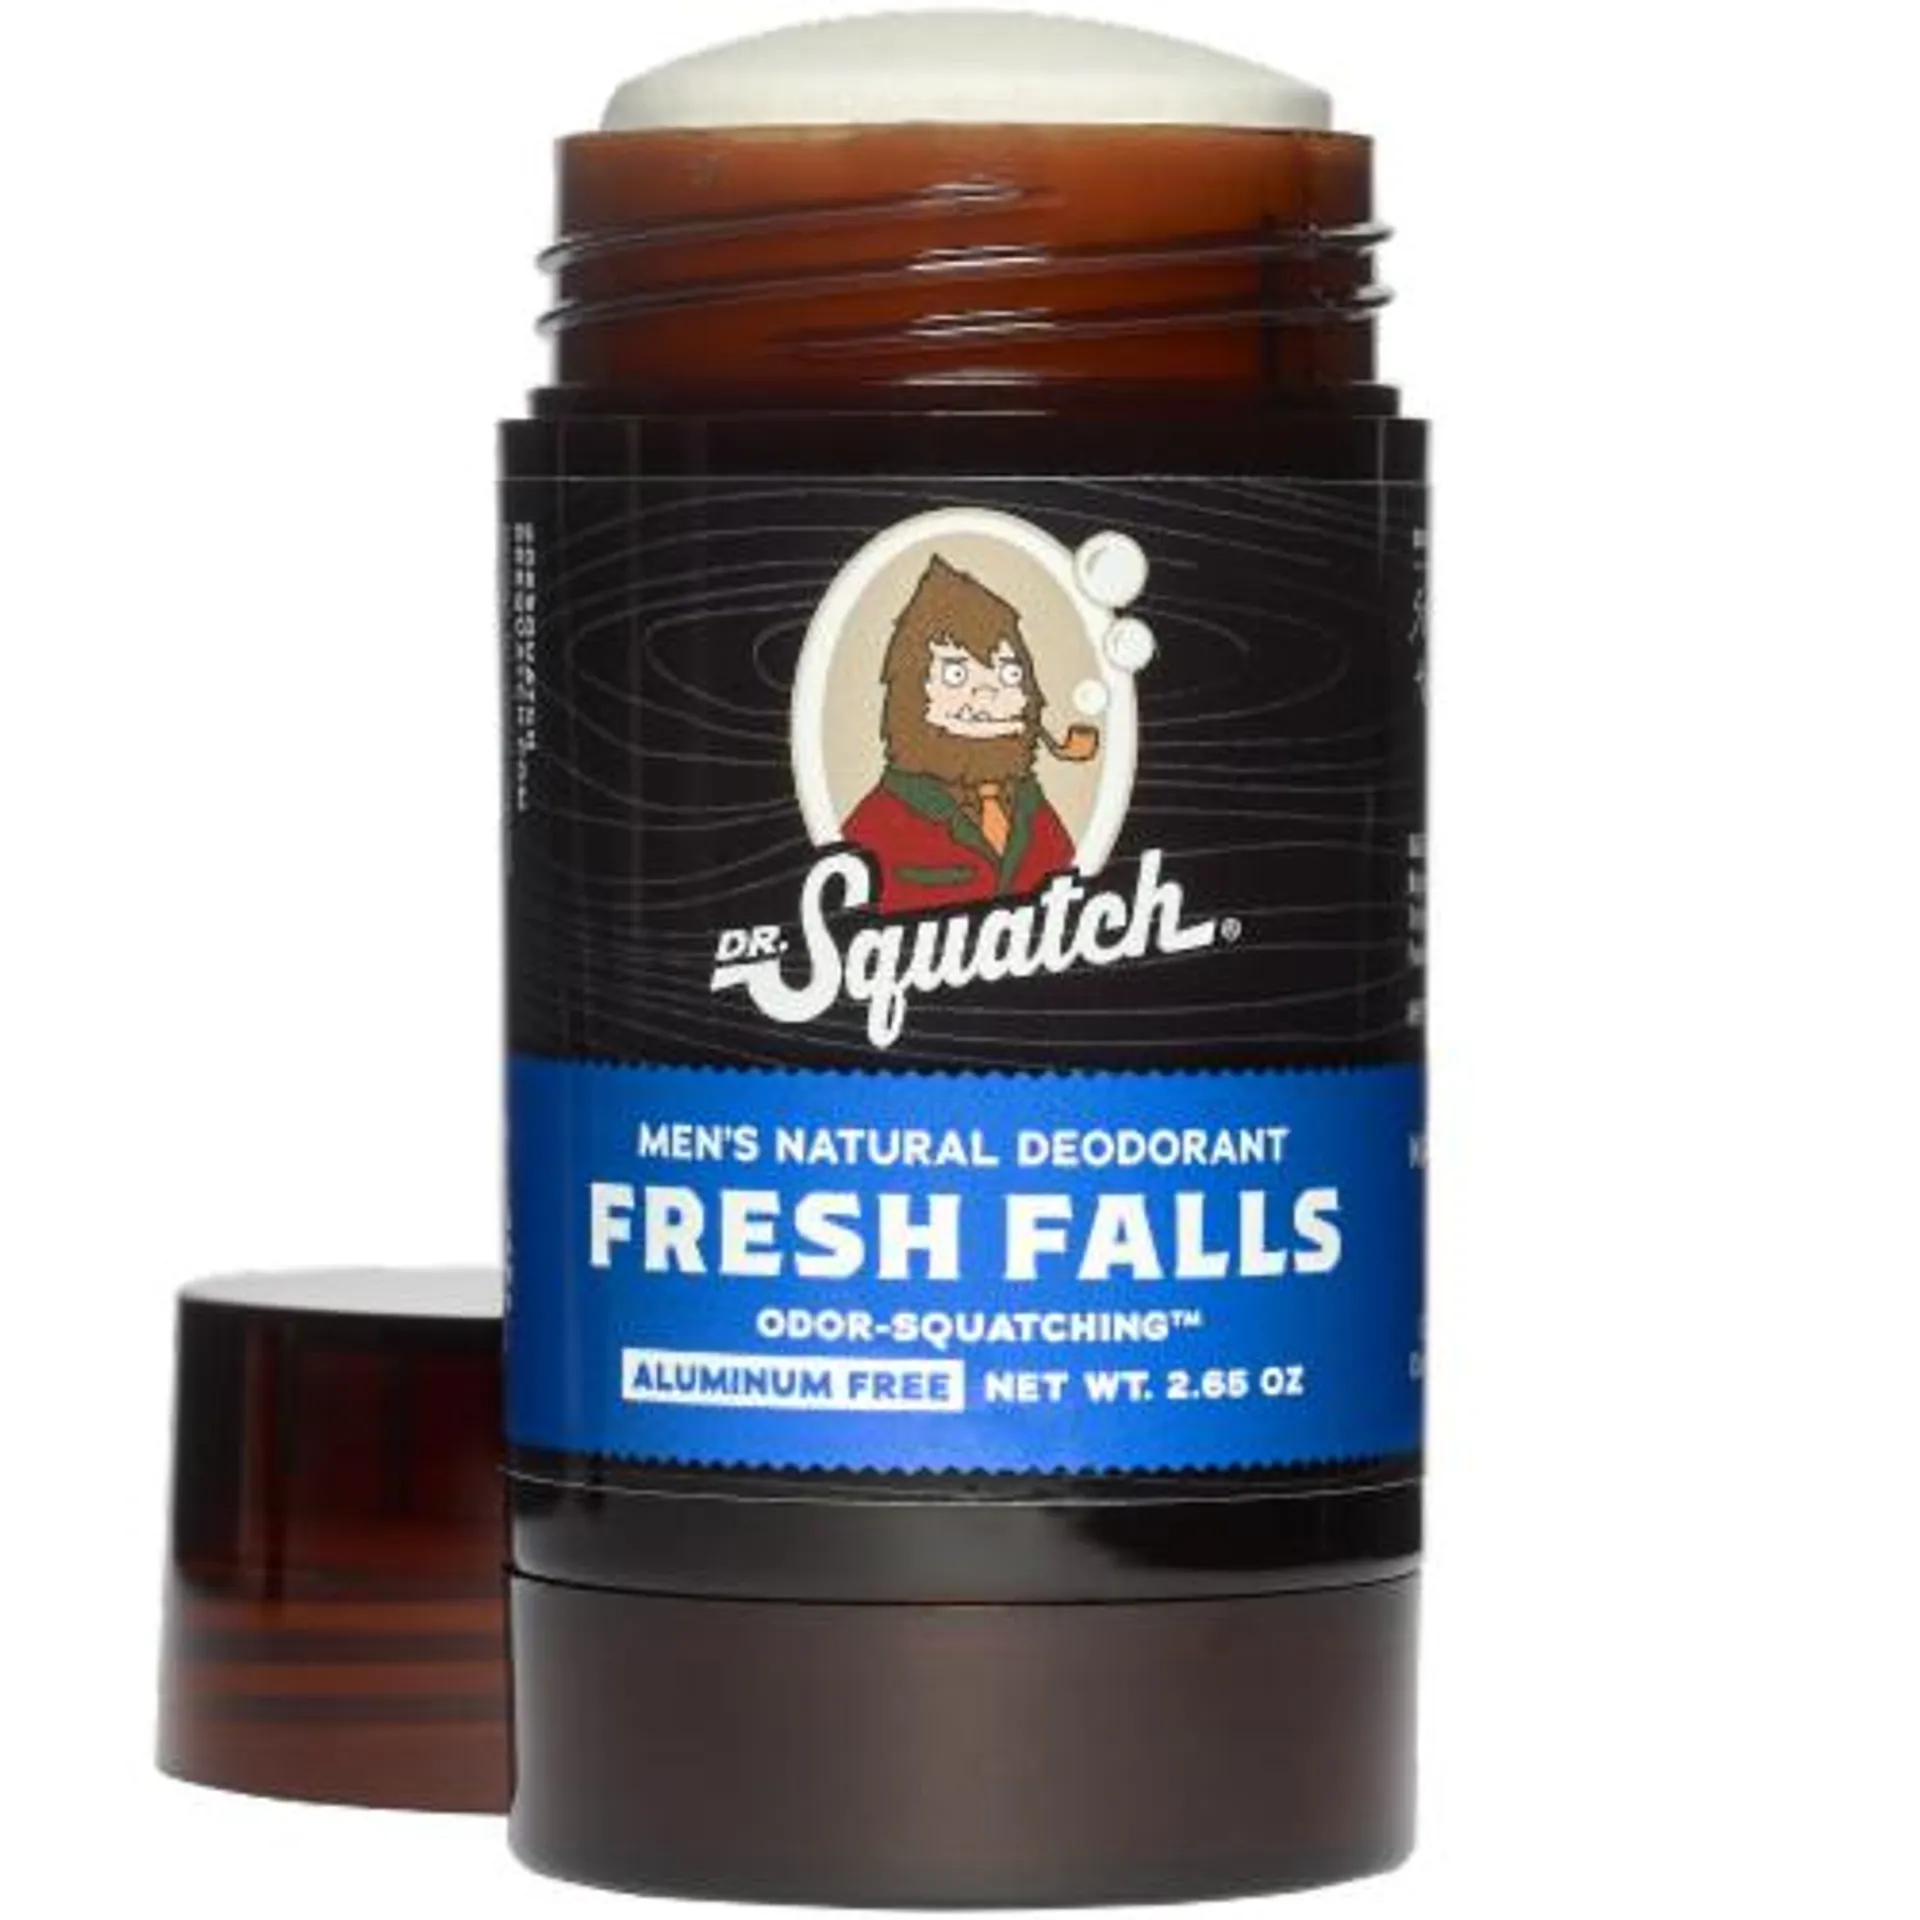 Dr. Squatch Fresh Falls Natural Men's Deodorant